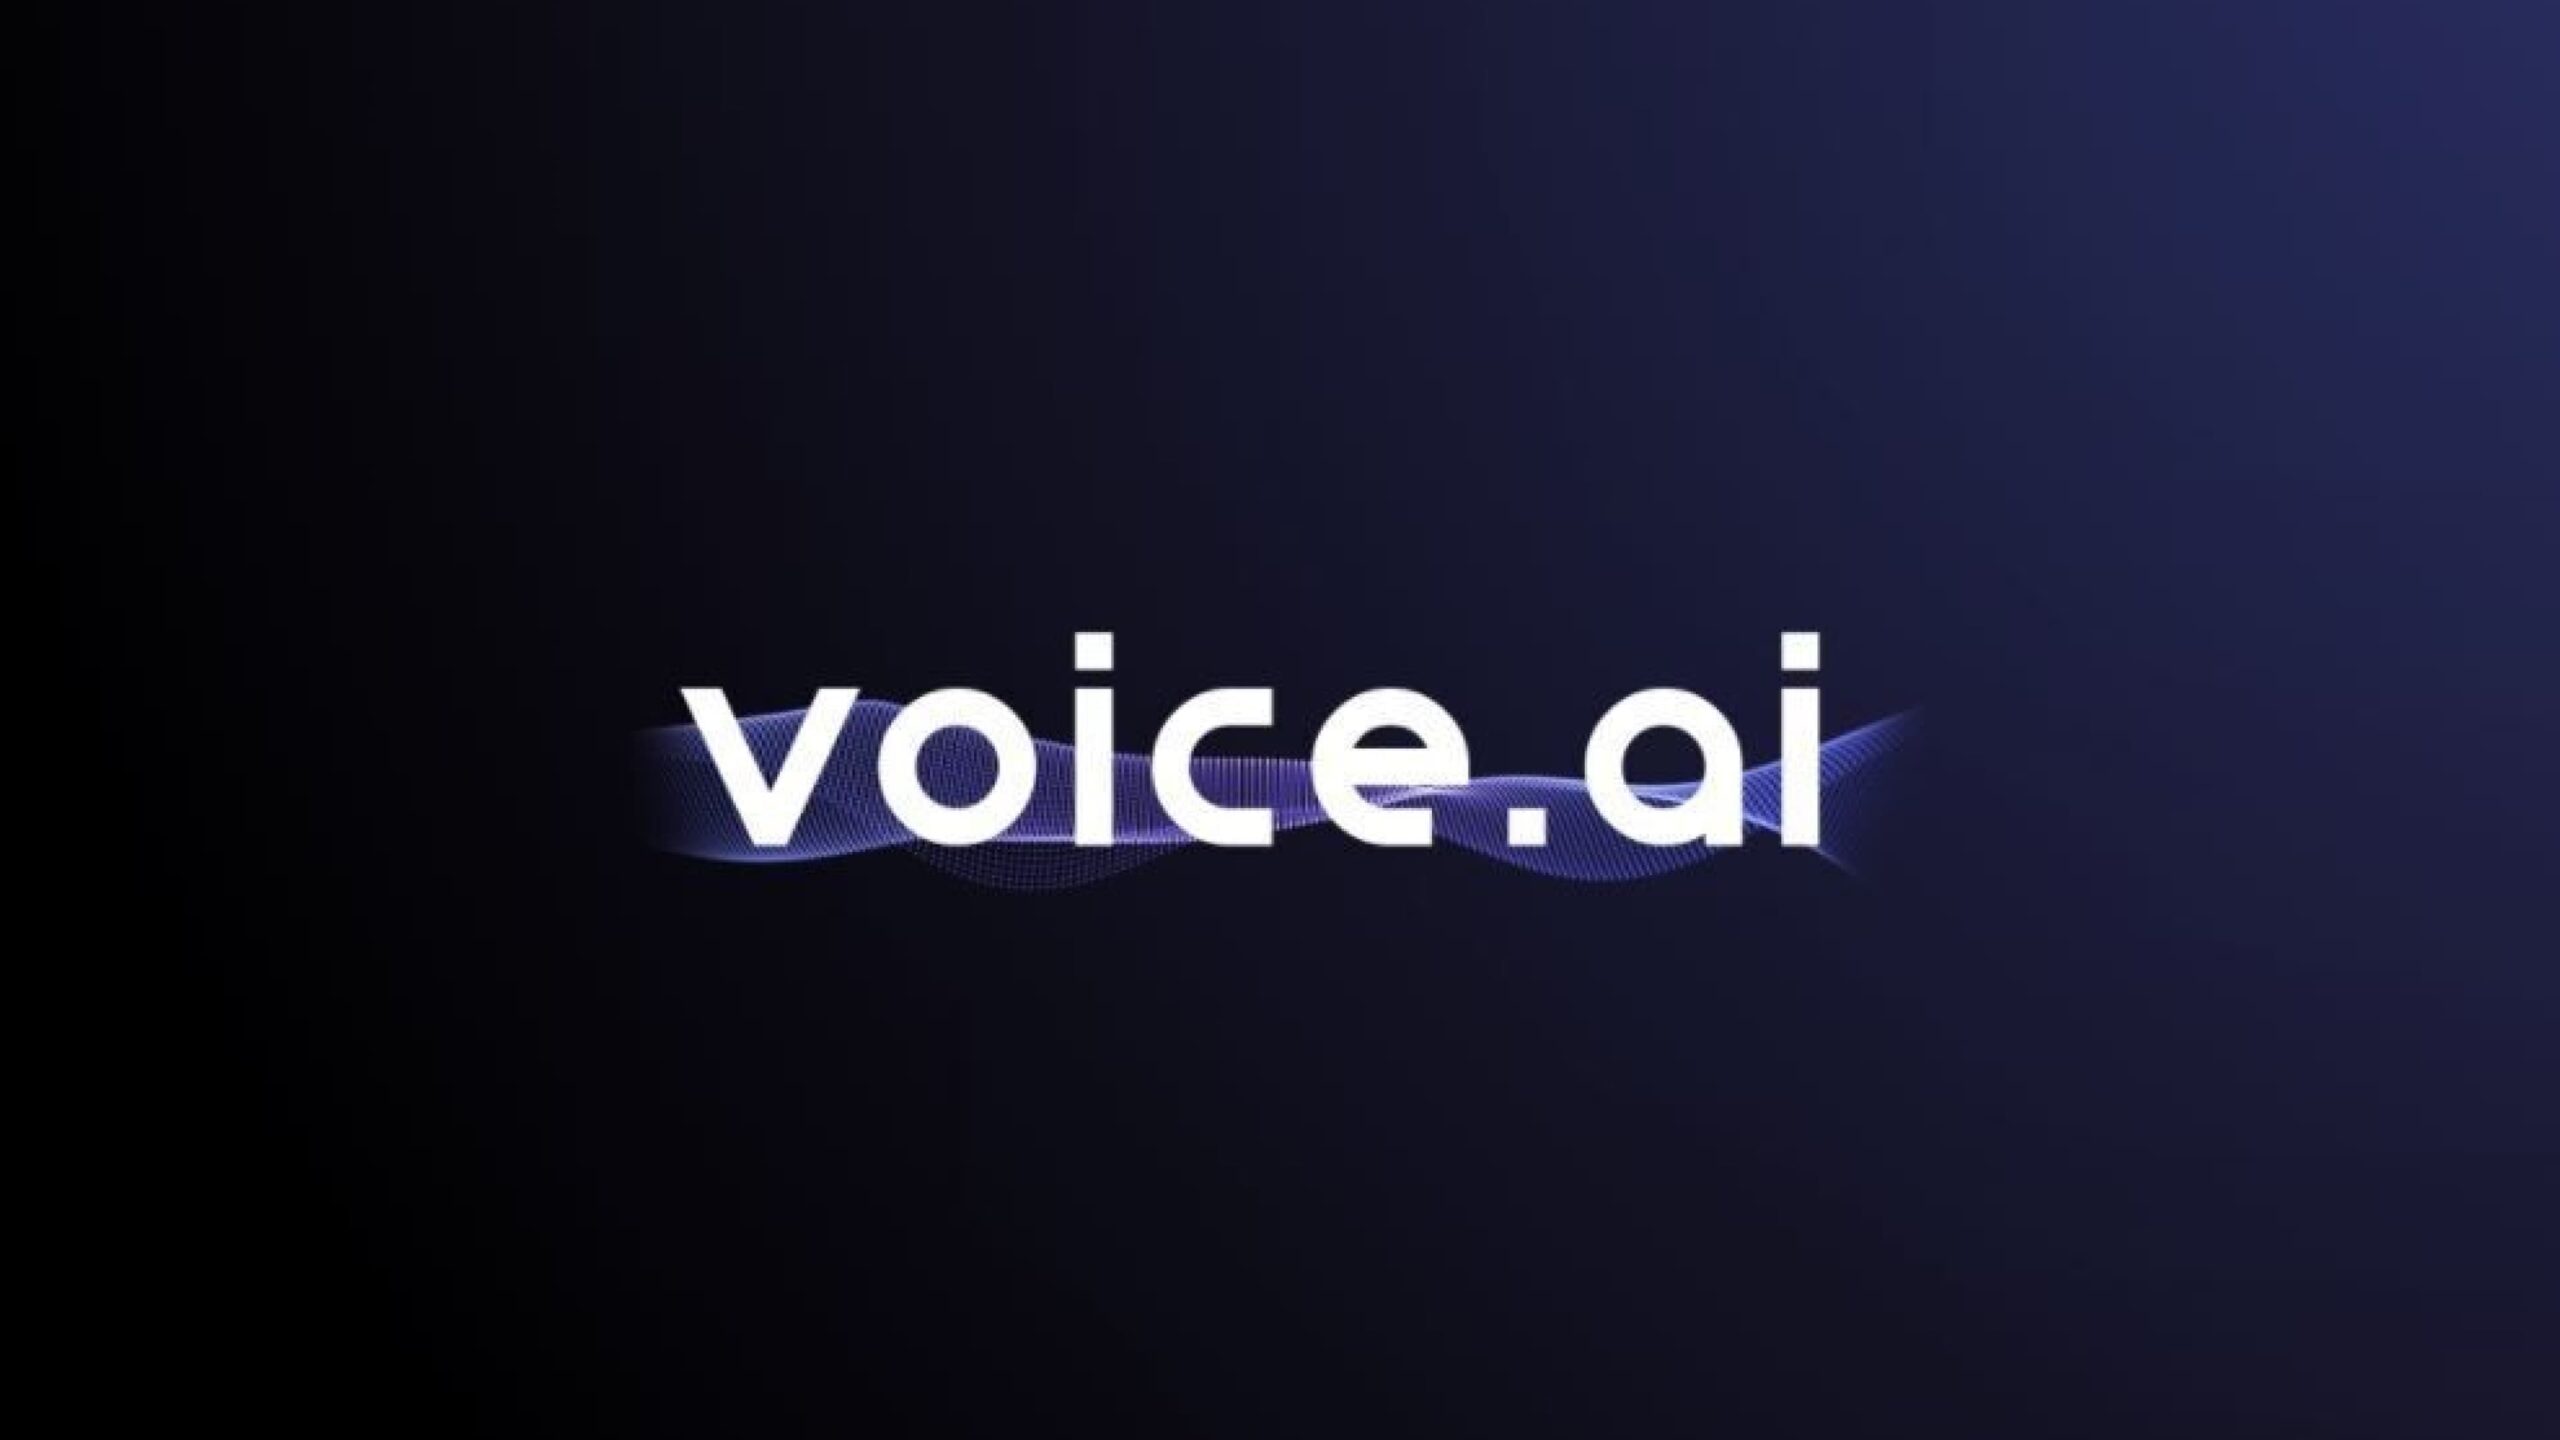 Voice.ai、リアルタイム音声変換技術を手がけ、ユーザー数が50万人近くに達するとともに、初の外部資金調達で600万ドルを獲得